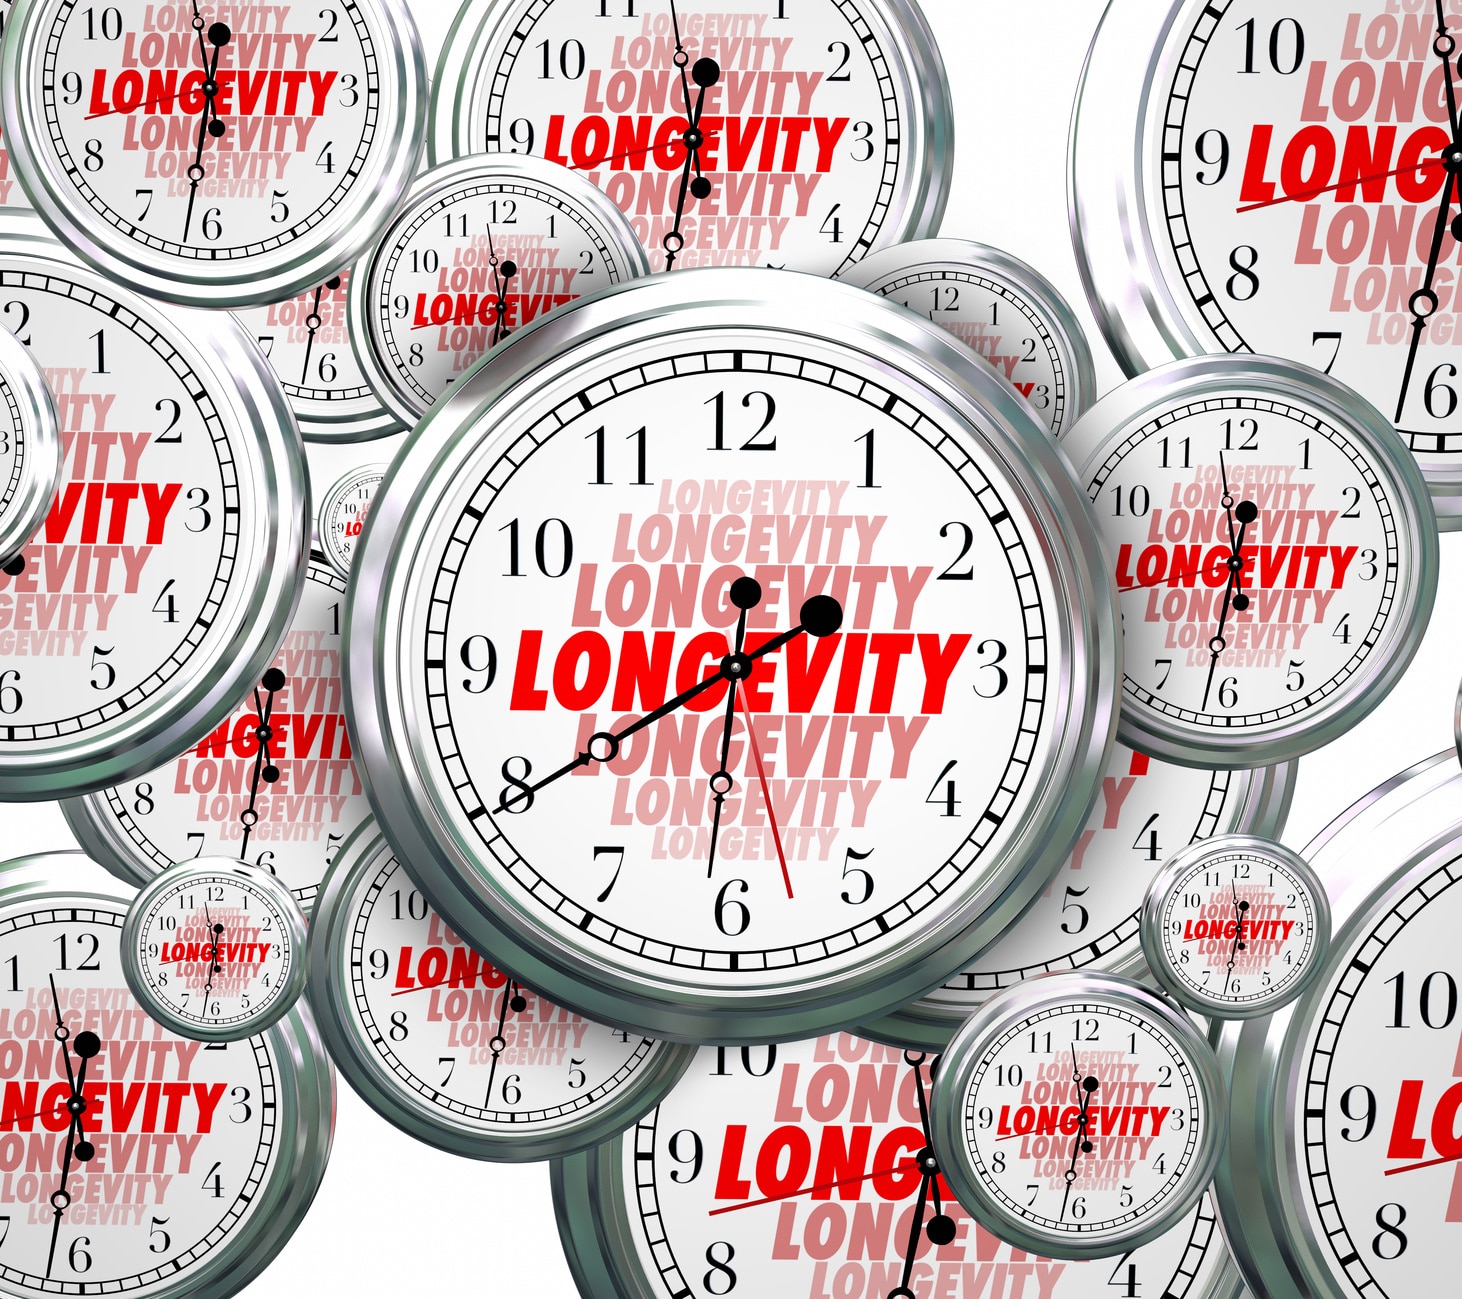 Many analog clocks with repeating text "longevity."